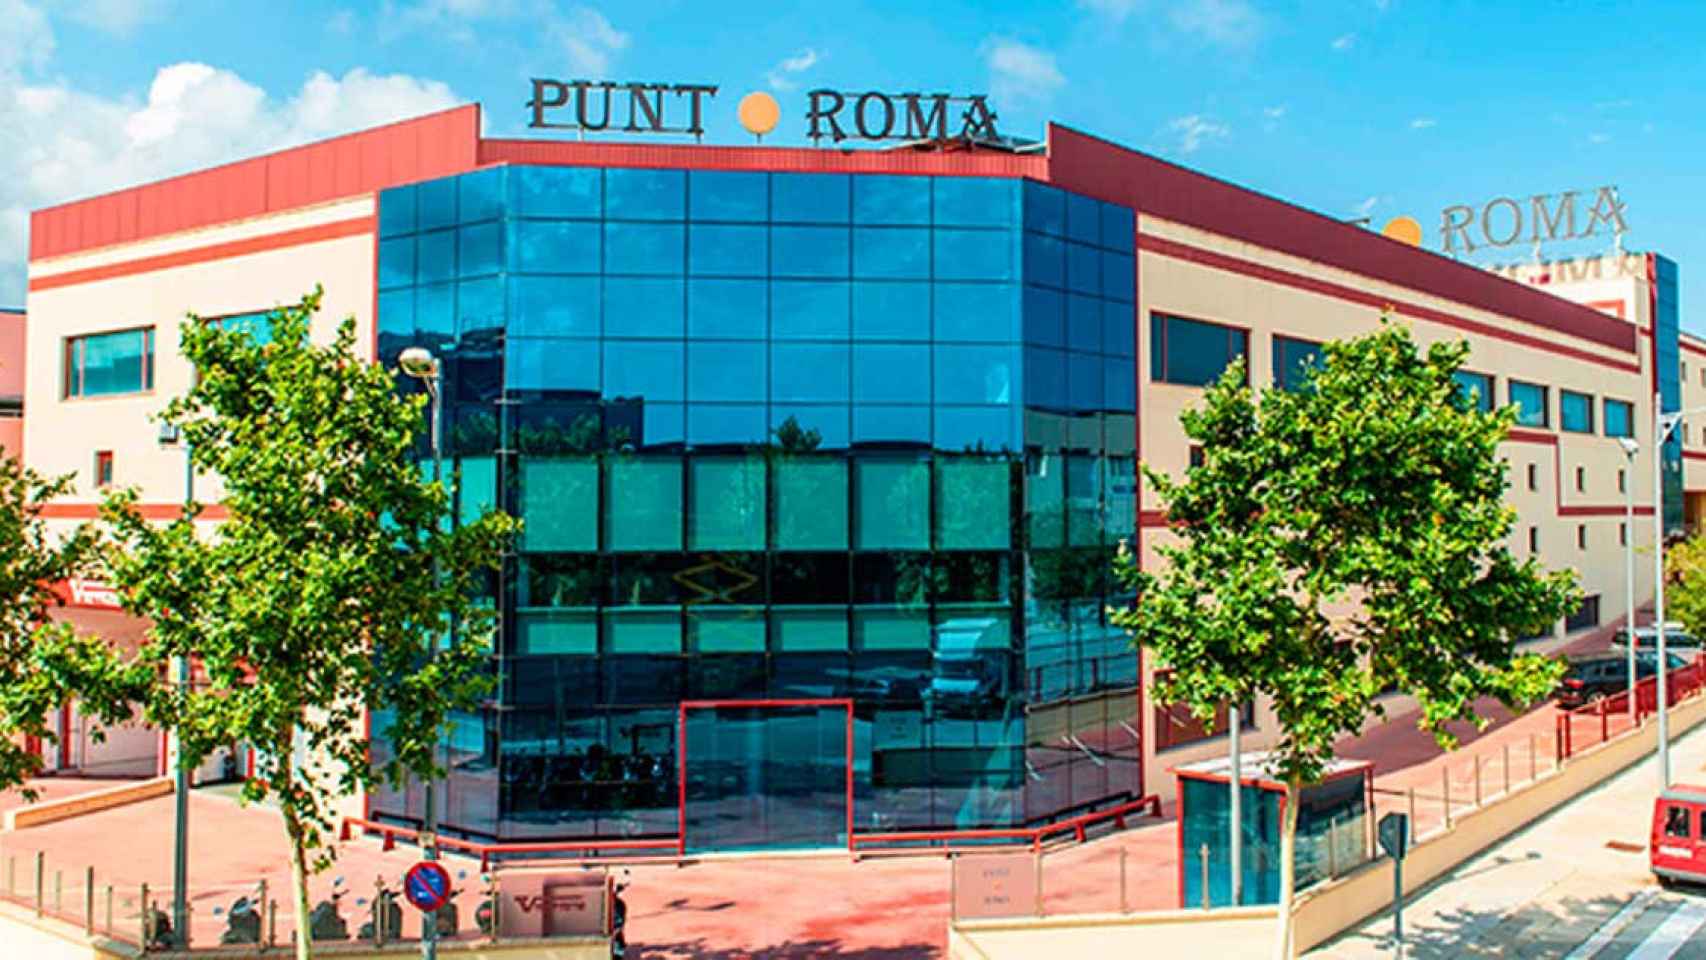 Oficinas centrales de Punt Roma en Mataró (Barcelona) / CG